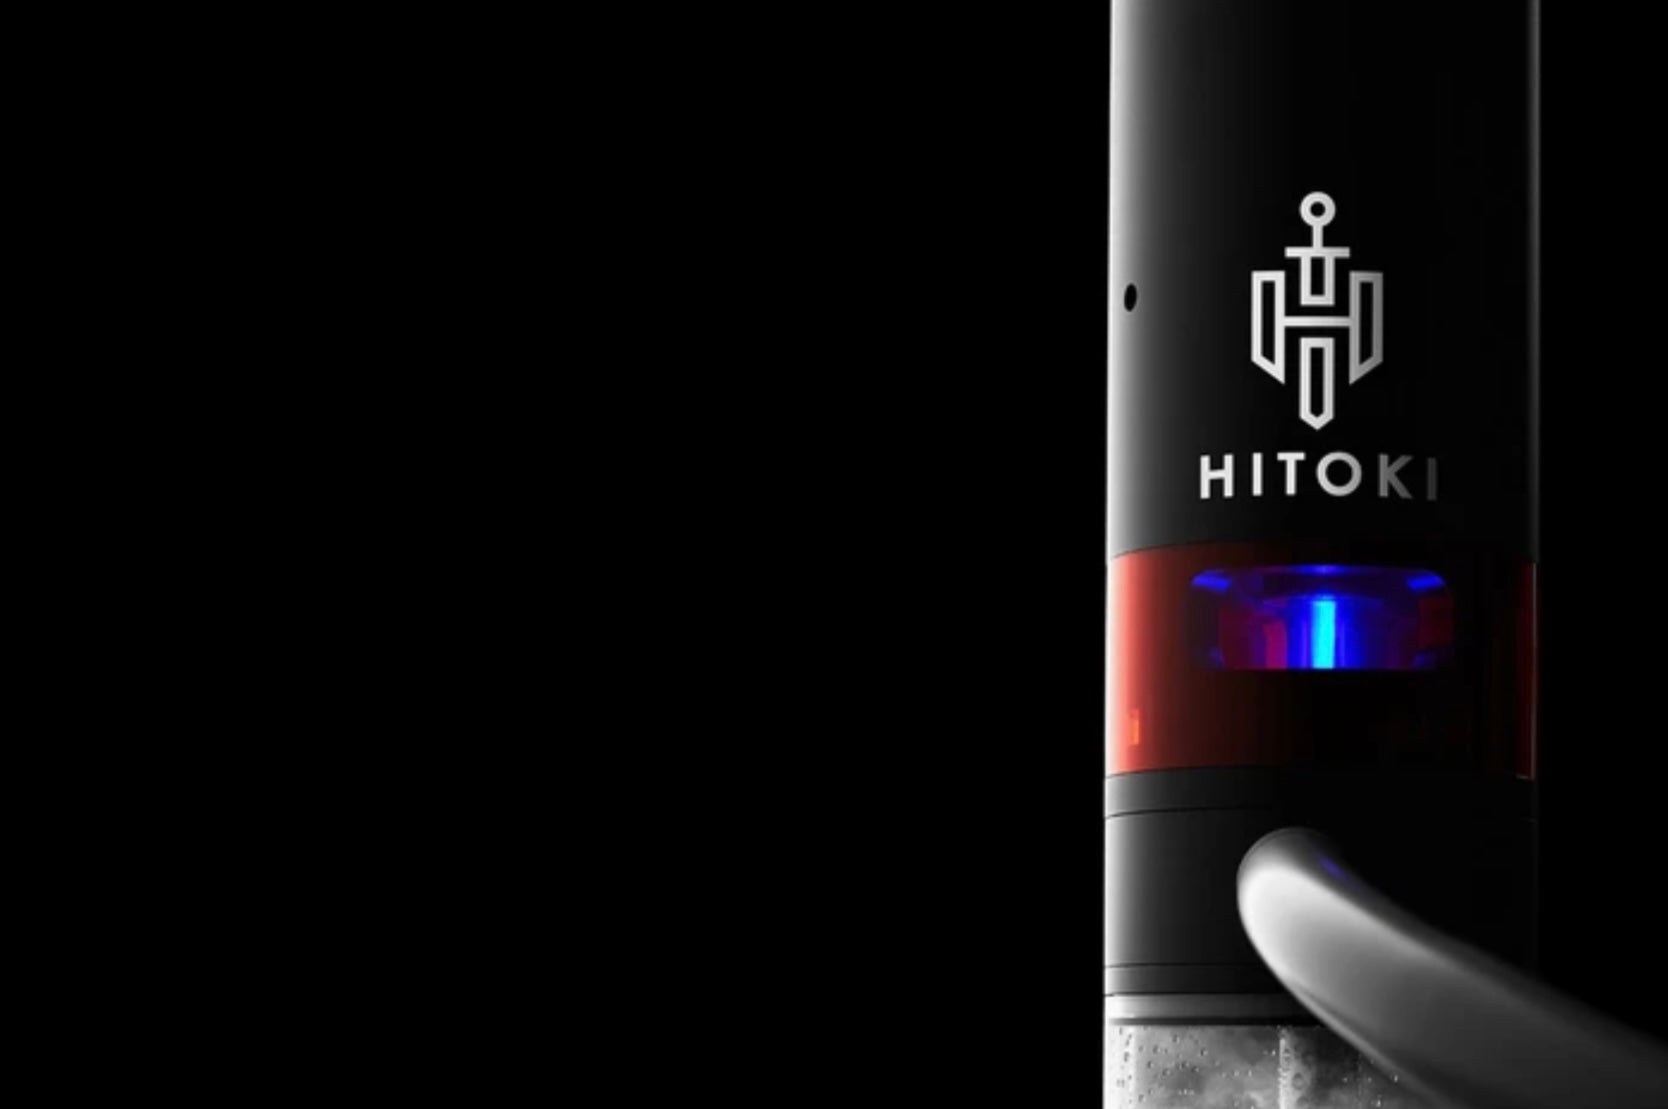 Hitoki Trident V2 Black w/ Bonus Silicone Mouthpiece